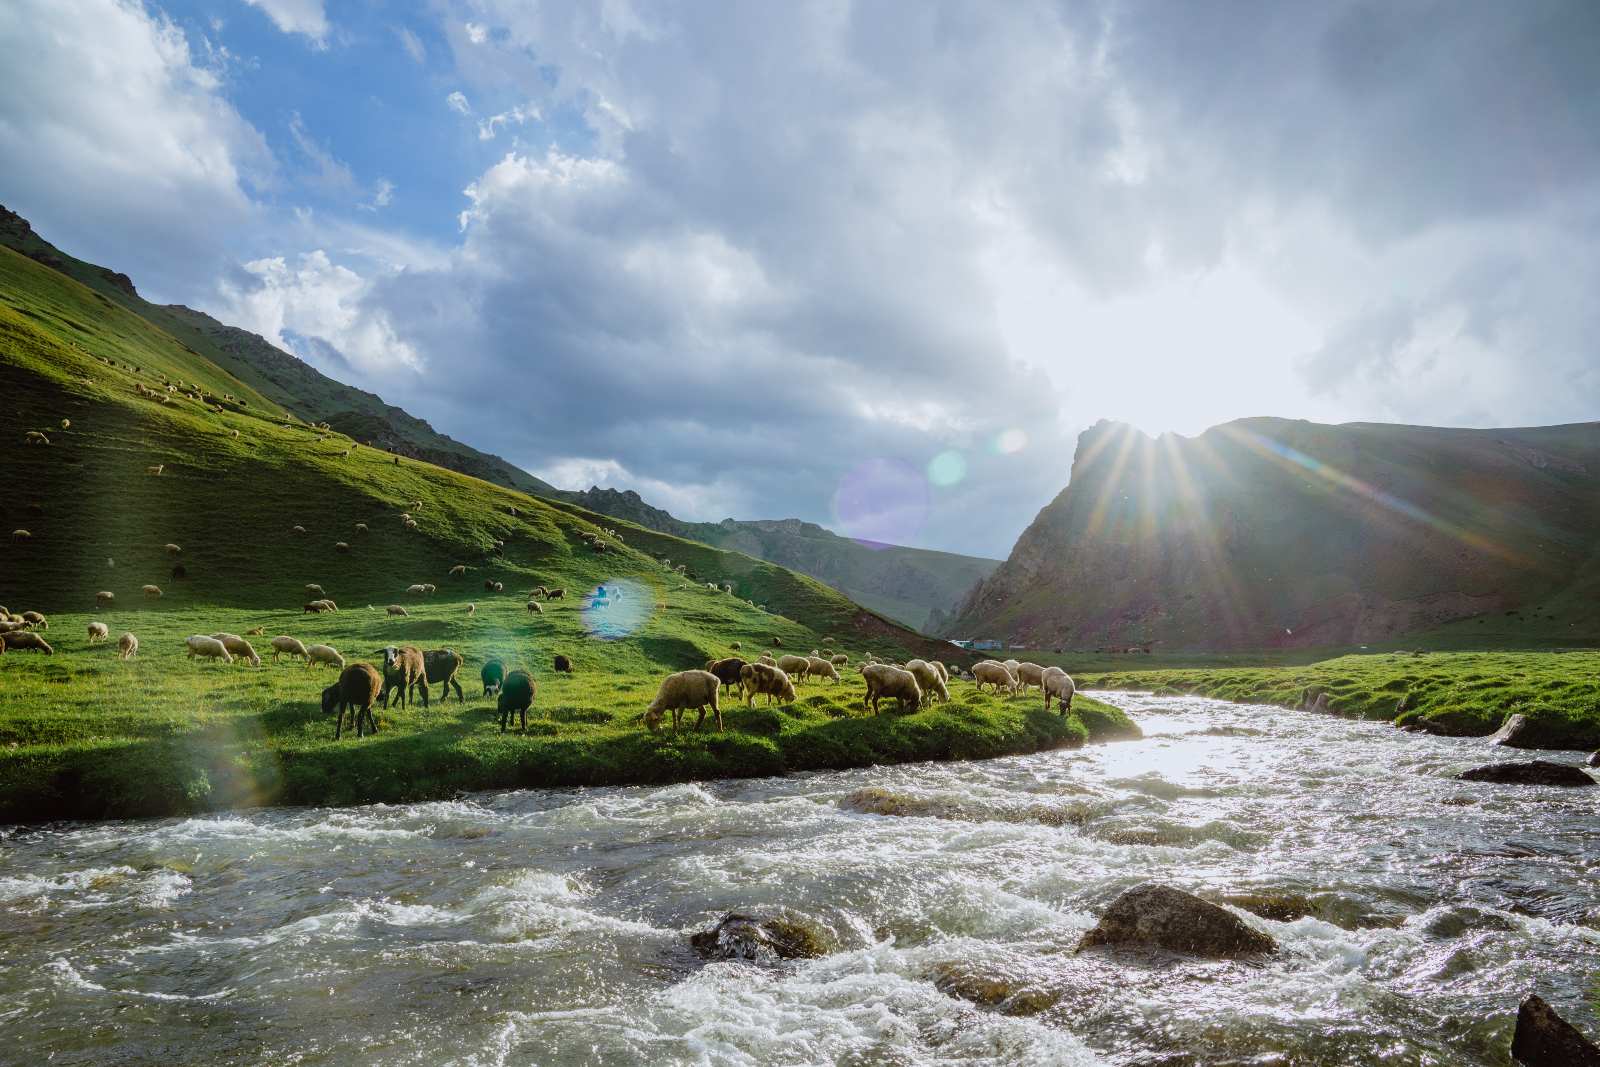 Schafherde am Fluß auf grünen Wiesen in einer Naturlandschaft mit Bergen bei Sonnenschein